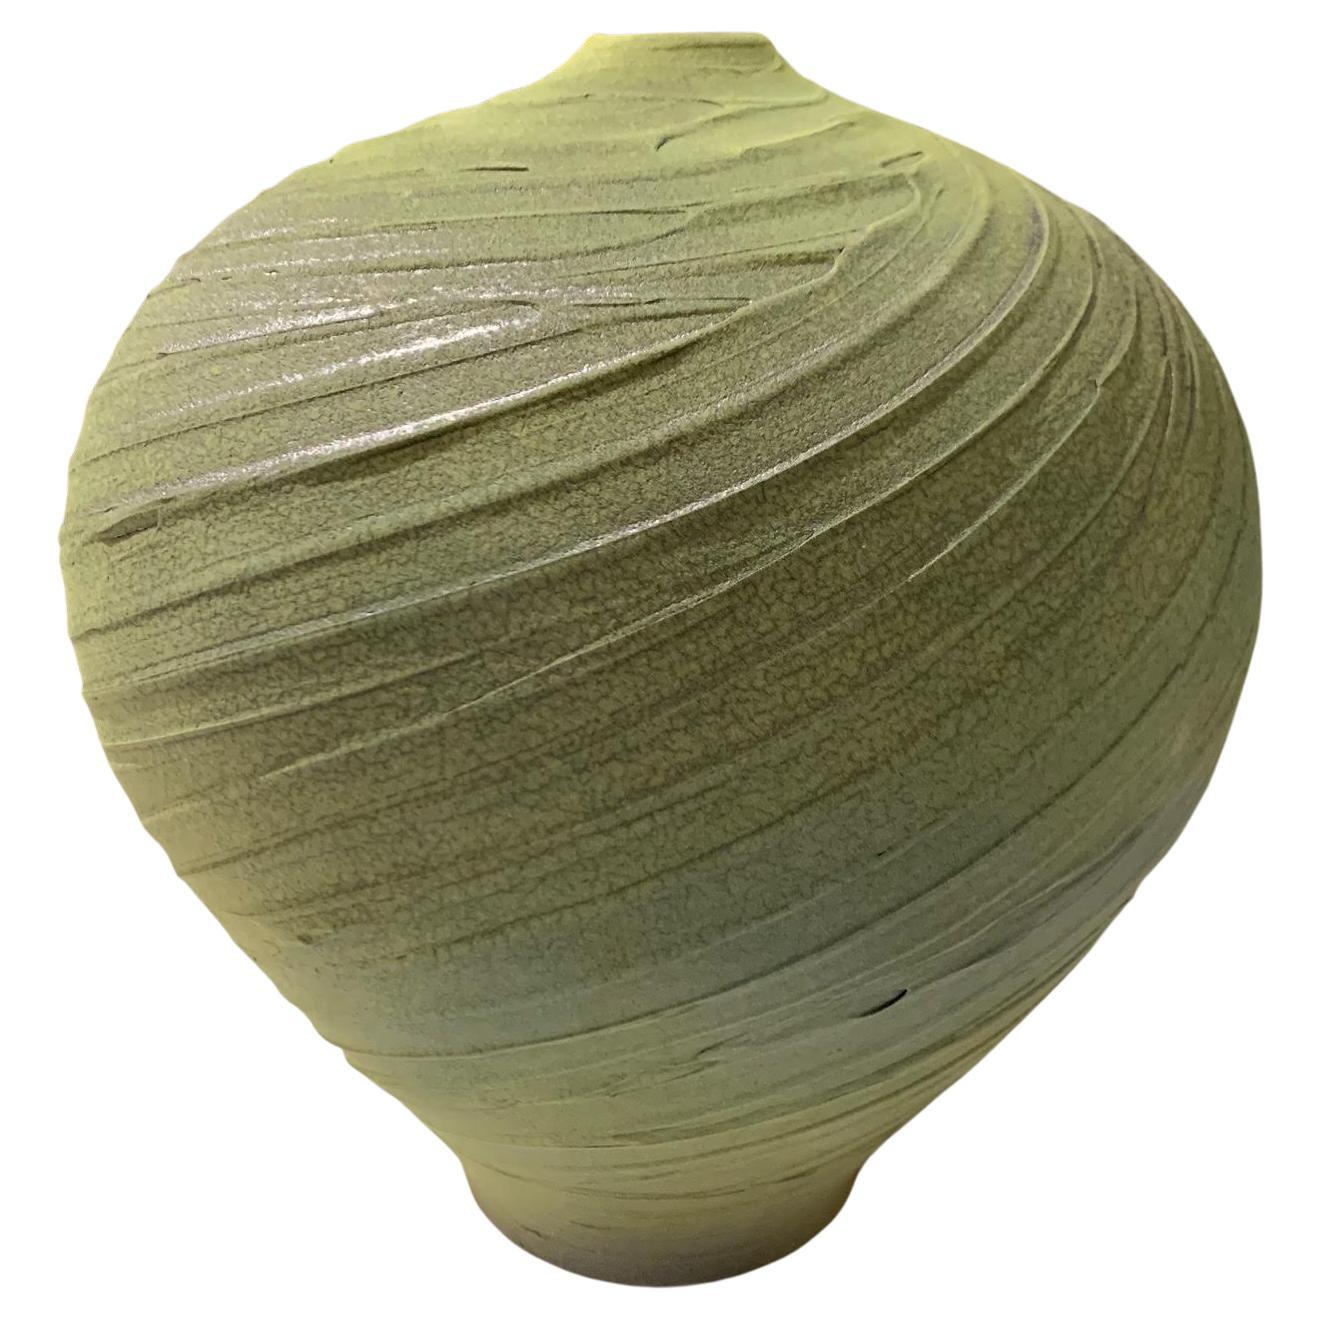 Vase en faïence verte texturée faite à la main, contemporain, États-Unis